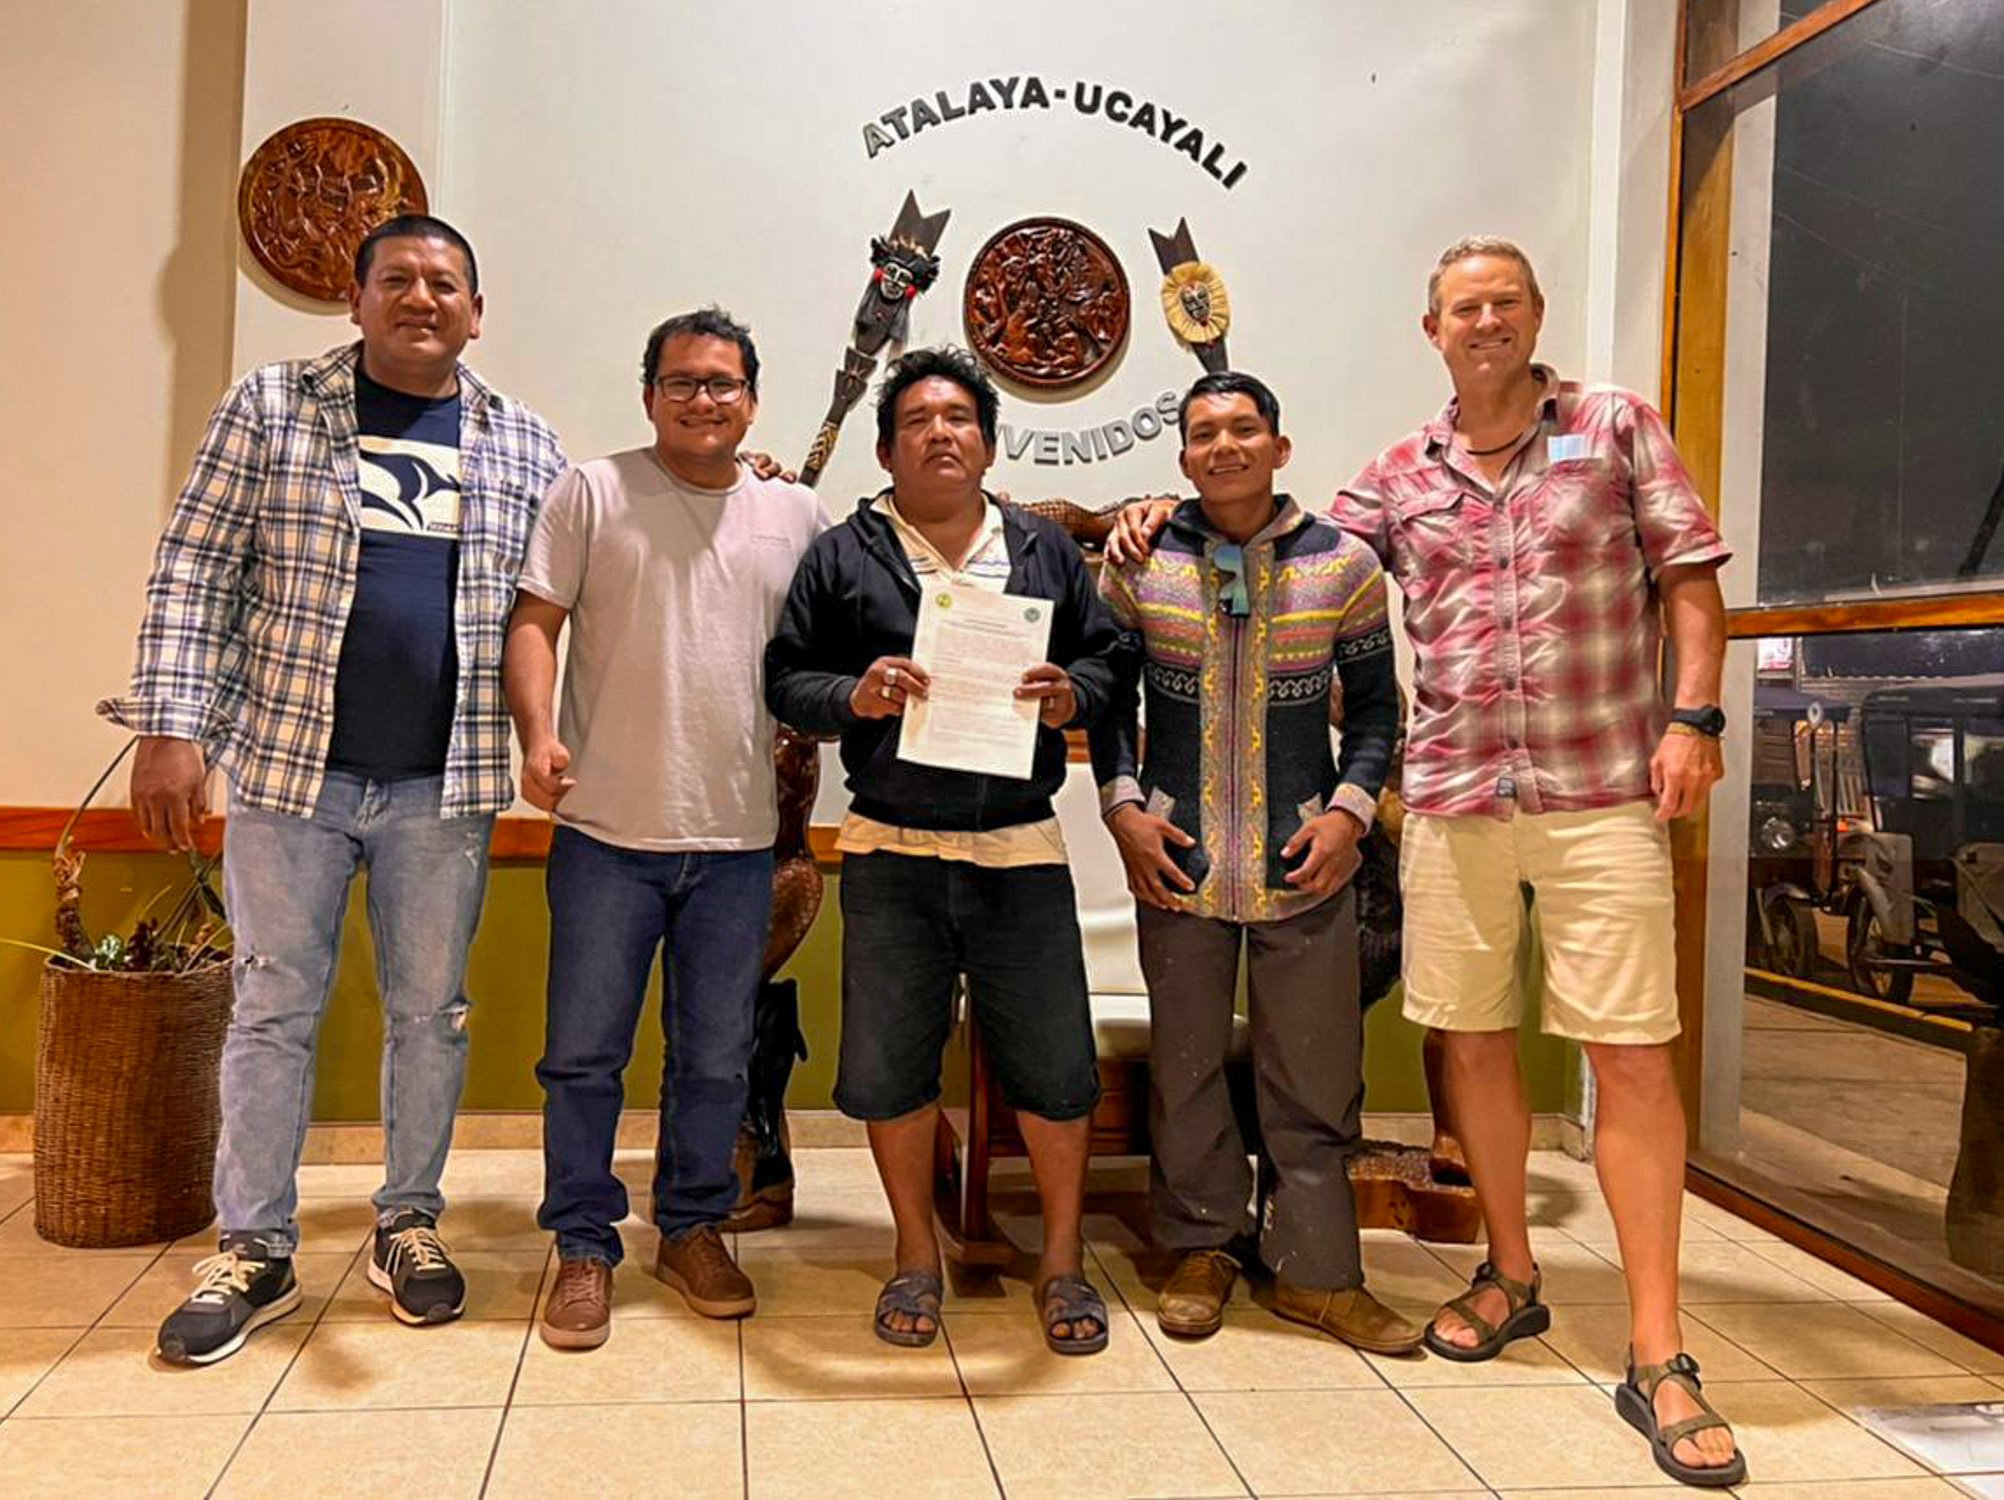   Miembros del equipo UAC con dirigentes de FIARIM, la Federación Indígena Alto Río Inuya y Mapuya, que representa a Alto Esperanza y tienen un rol clave en su titulación.  